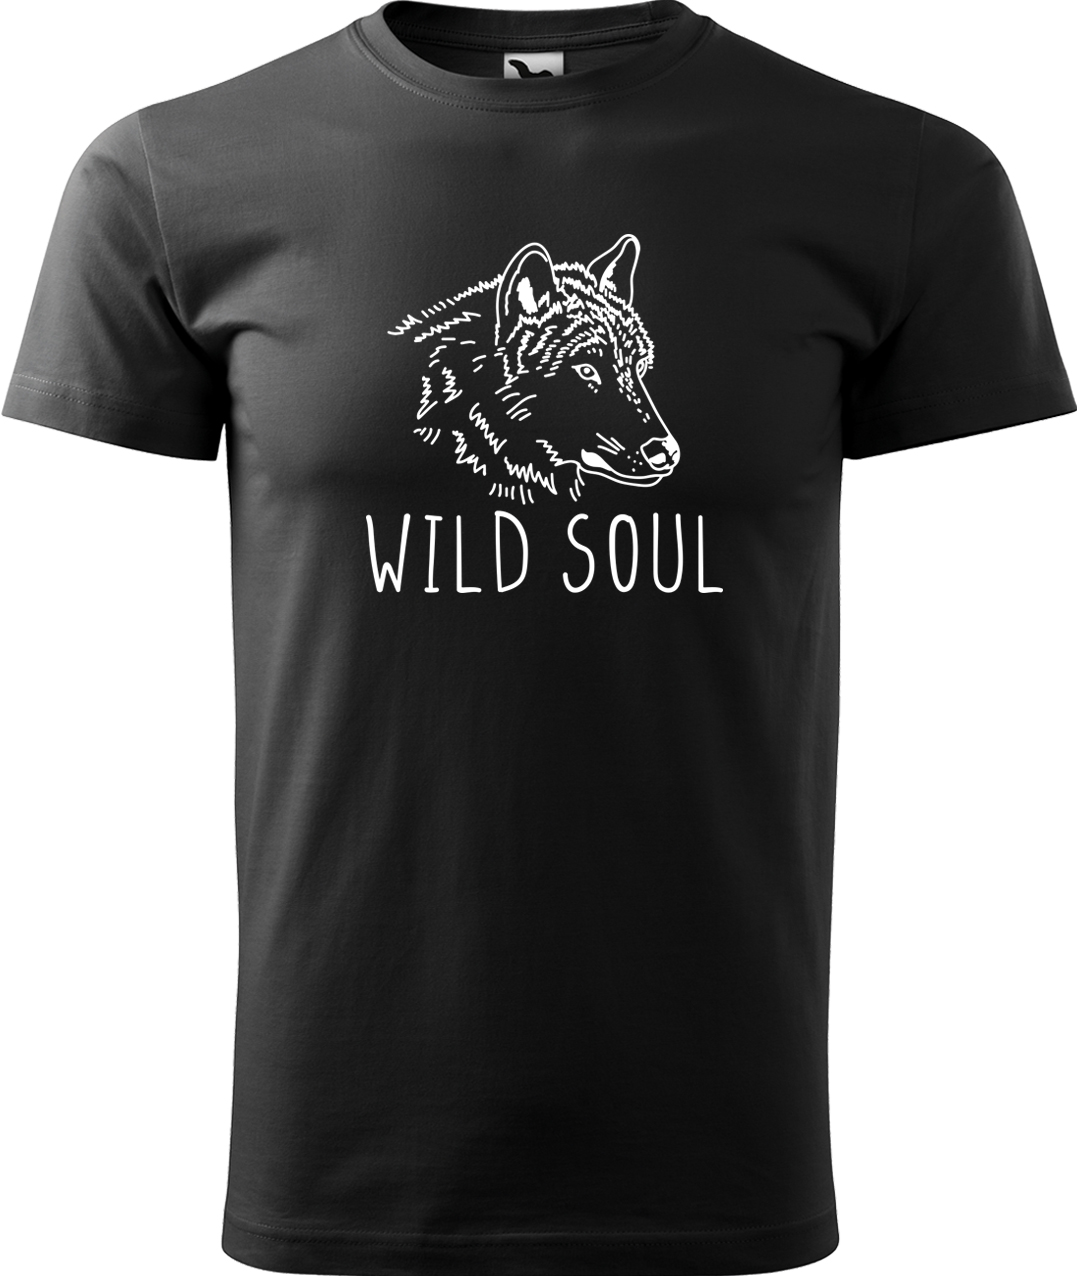 Pánské tričko s vlkem - Wild soul Velikost: XL, Barva: Černá (01), Střih: pánský